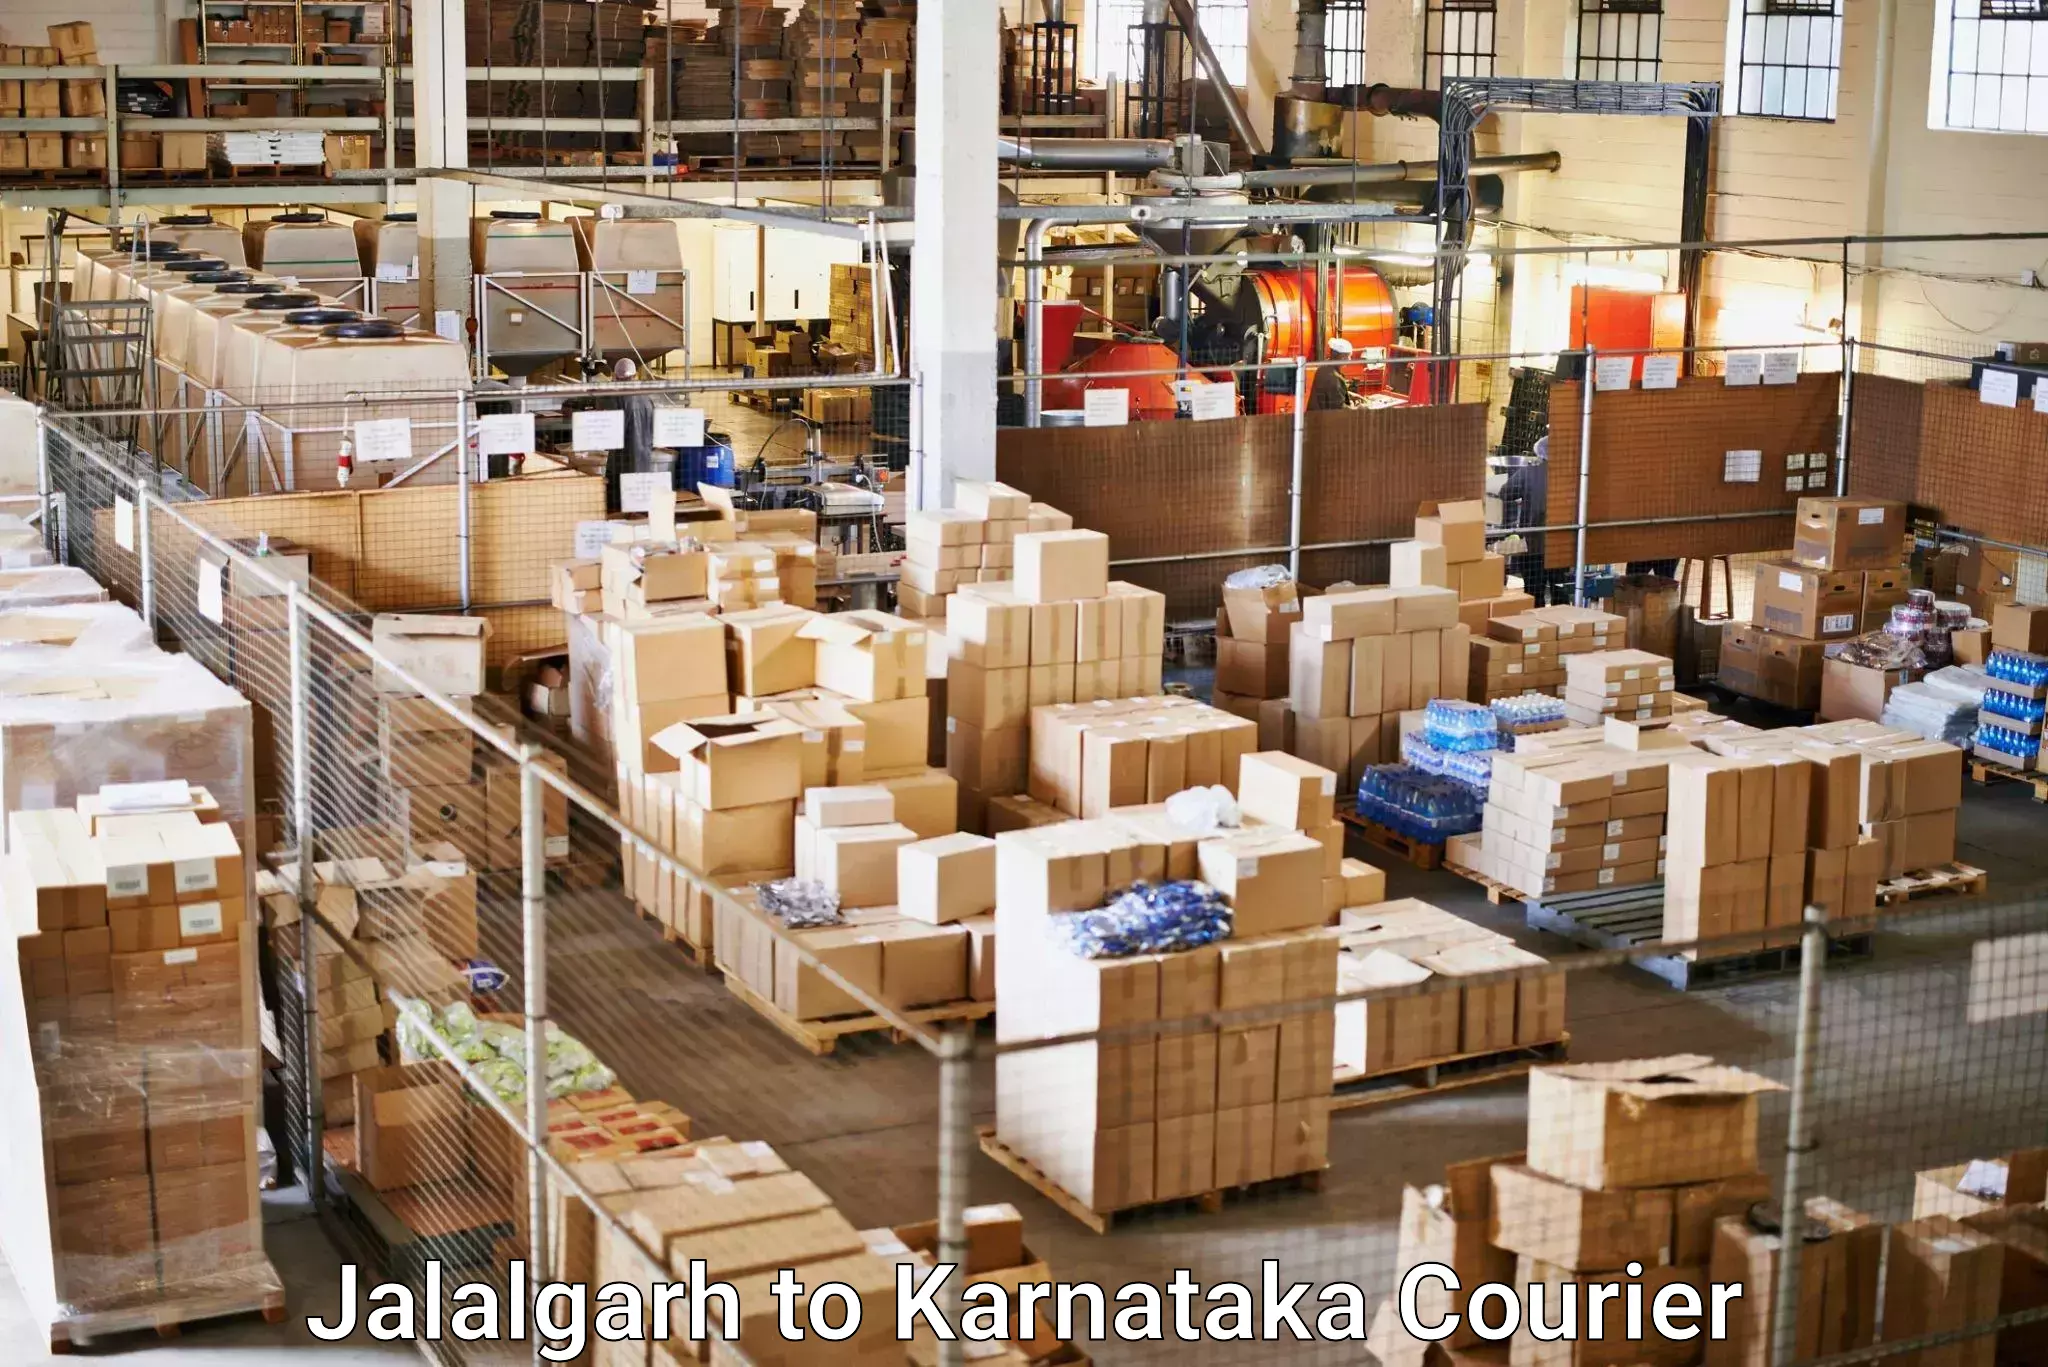 Global freight services Jalalgarh to Byadagi